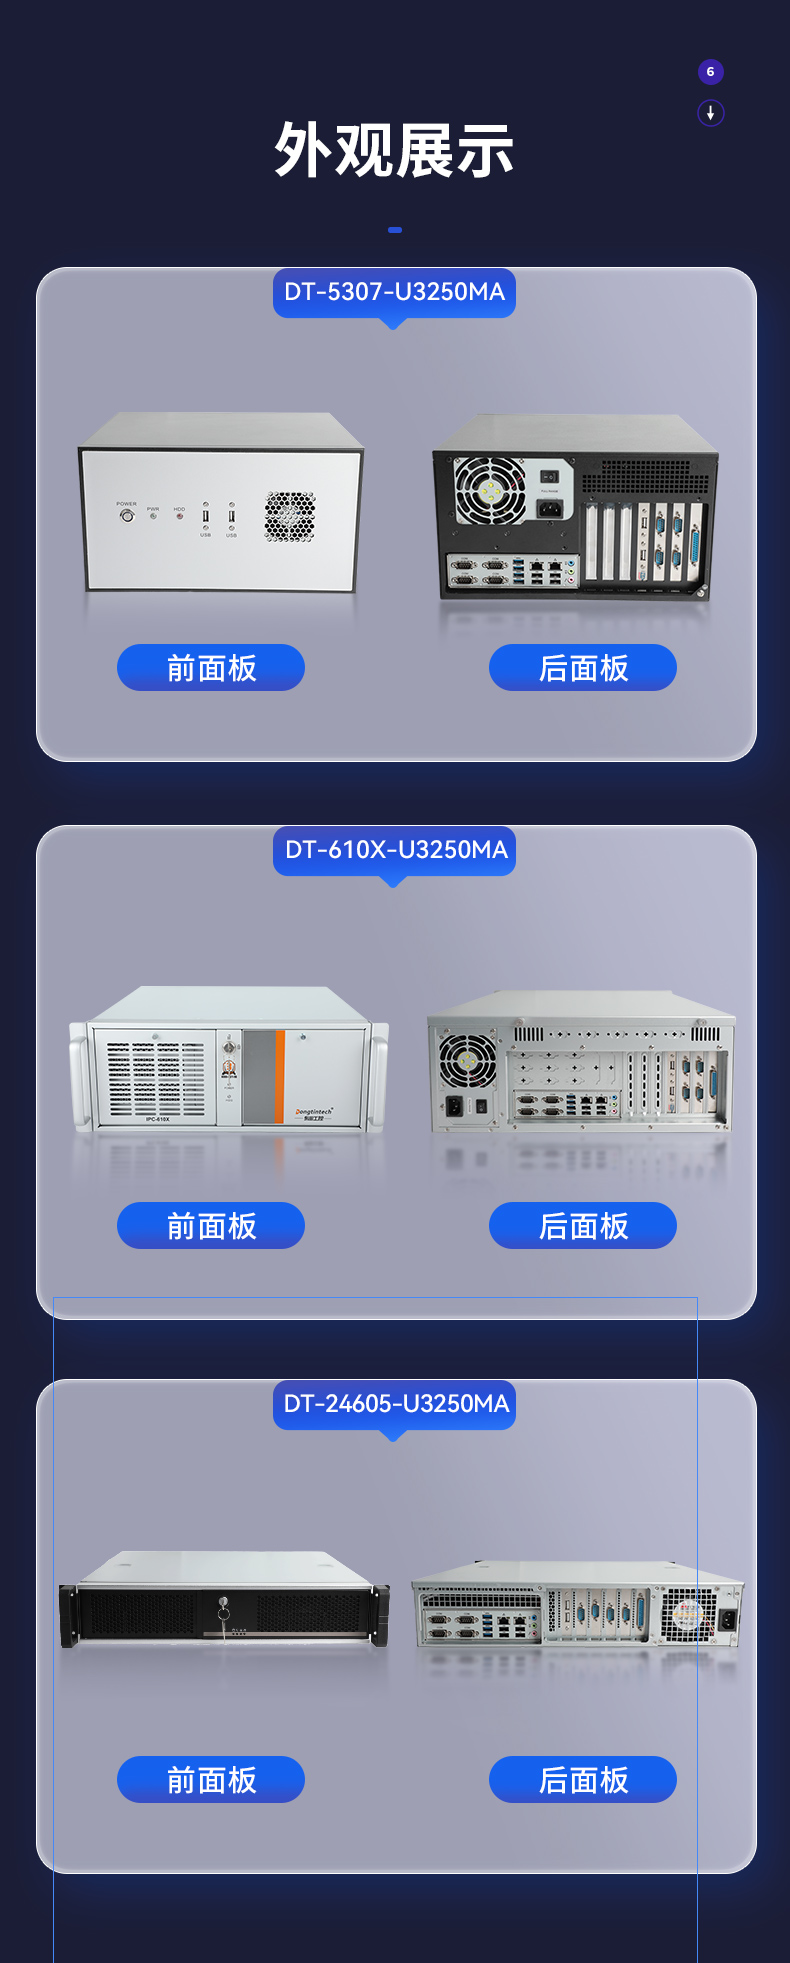 国内工控机,国产海光处理器主机,DT-5307-U3250MA.jpg